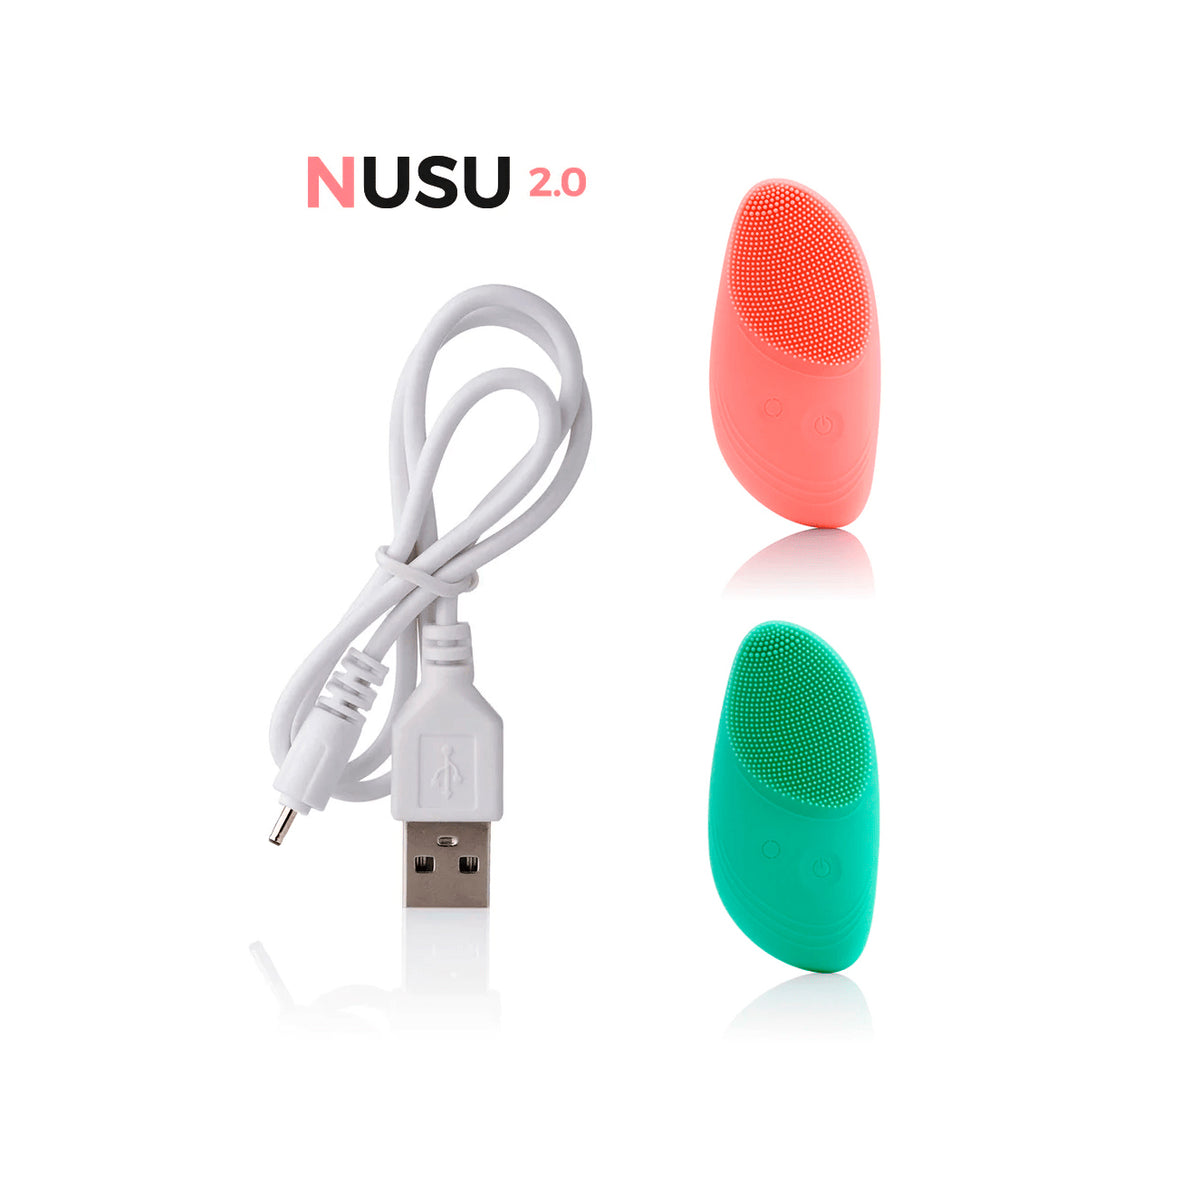 Cable Carga Nusu 2.0 y Easy Nusu